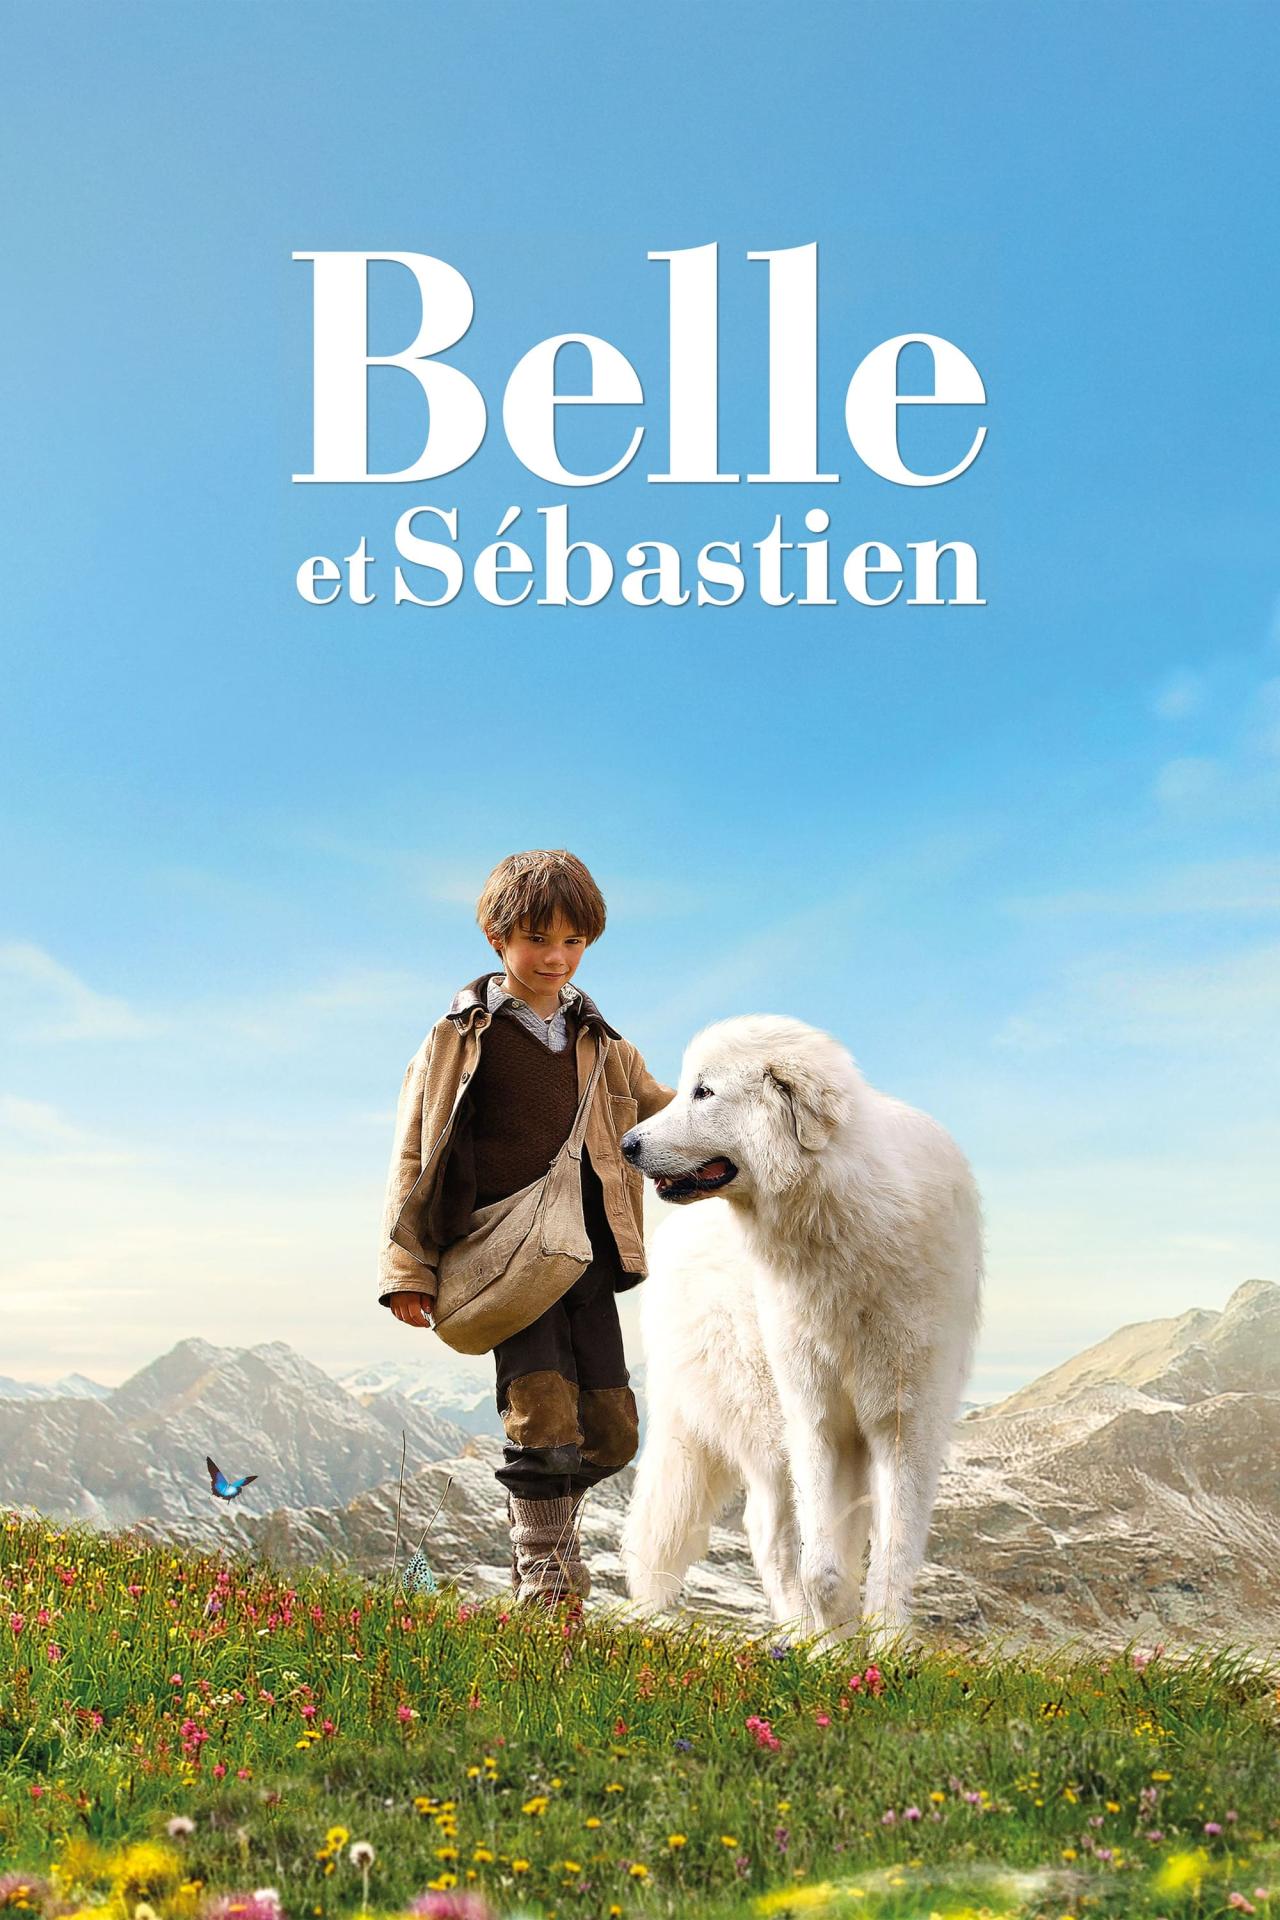 Belle et Sébastien est-il disponible sur Netflix ou autre ?